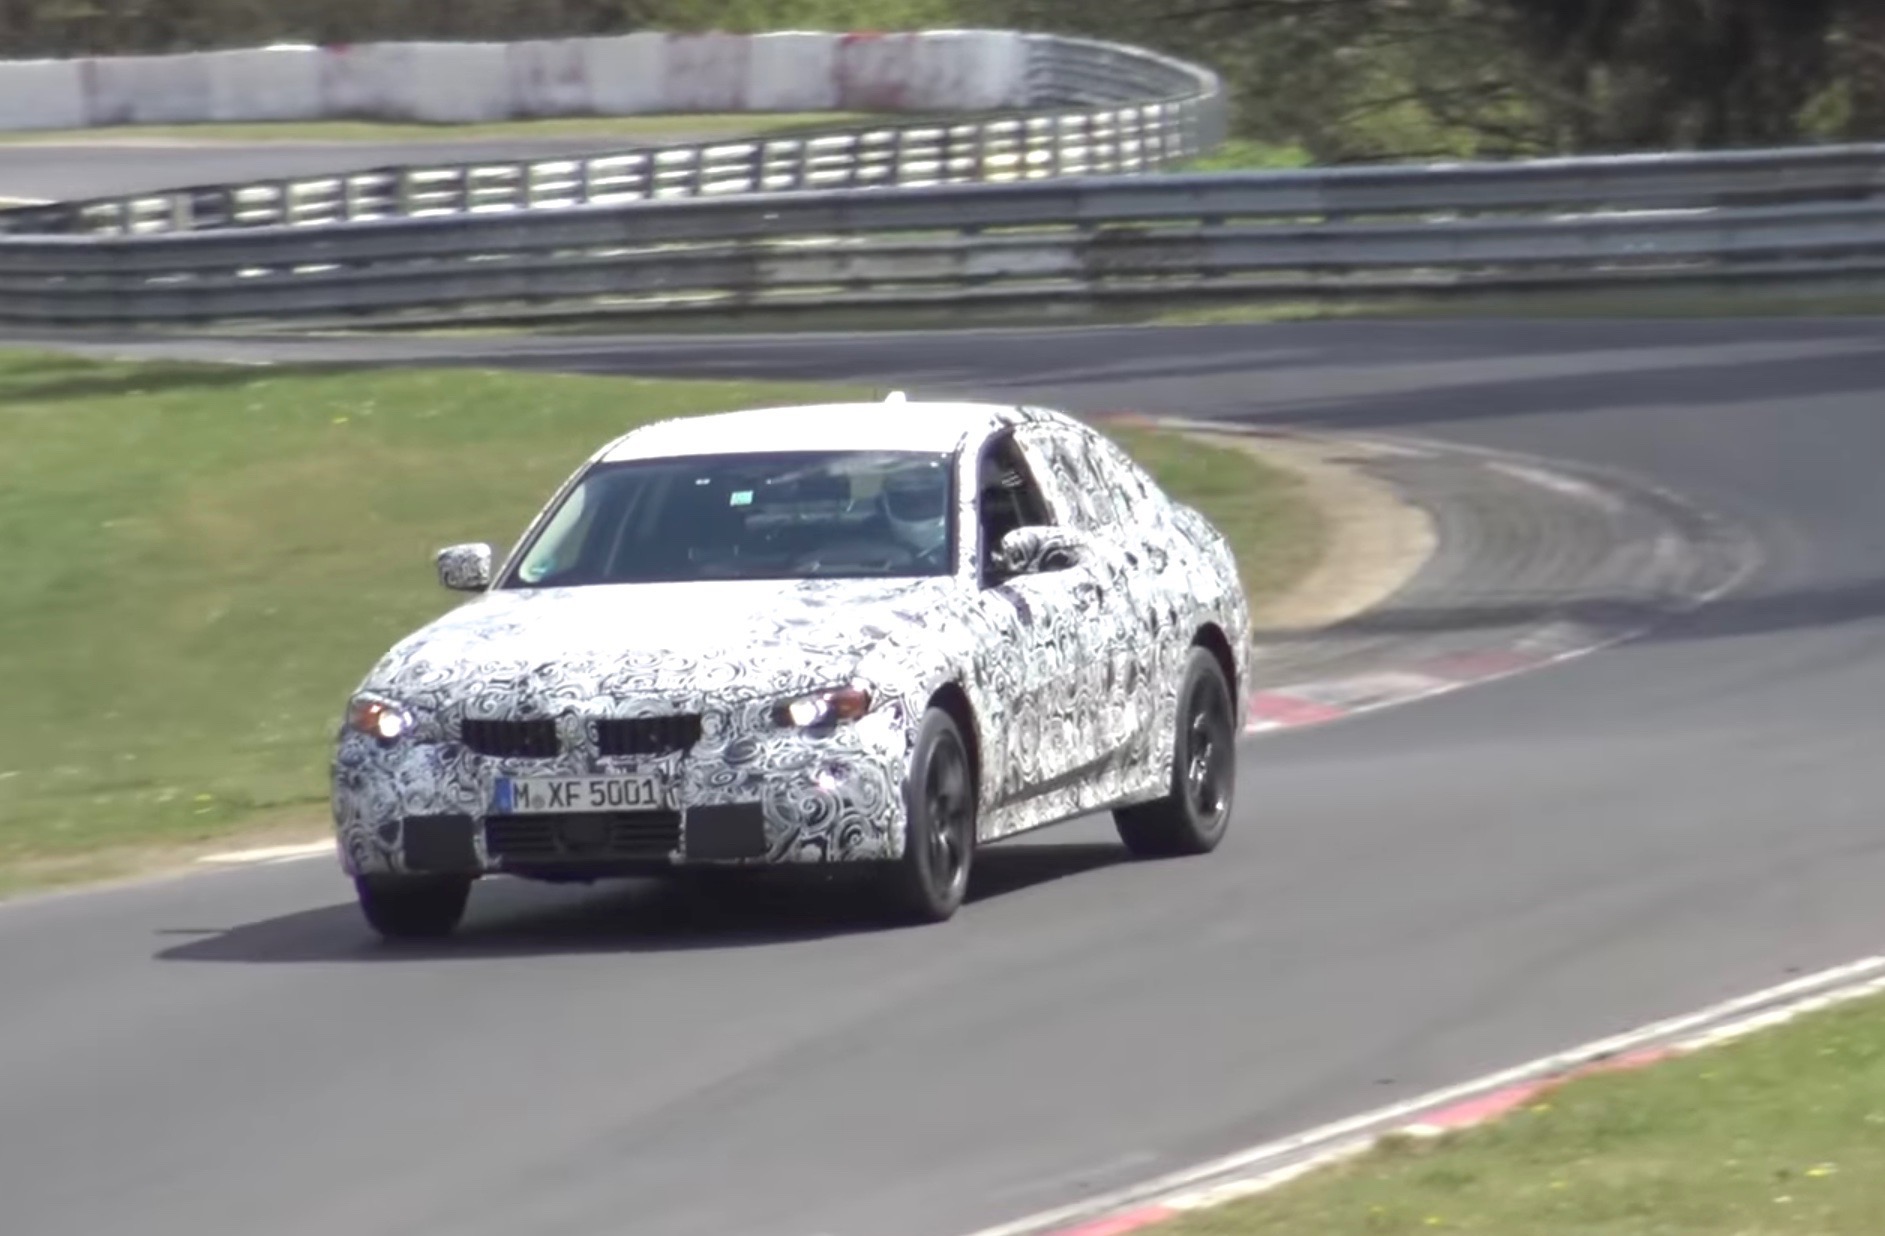 2018 BMW G20 3 Series spied on Nurburgring, electric hybrid? (video)